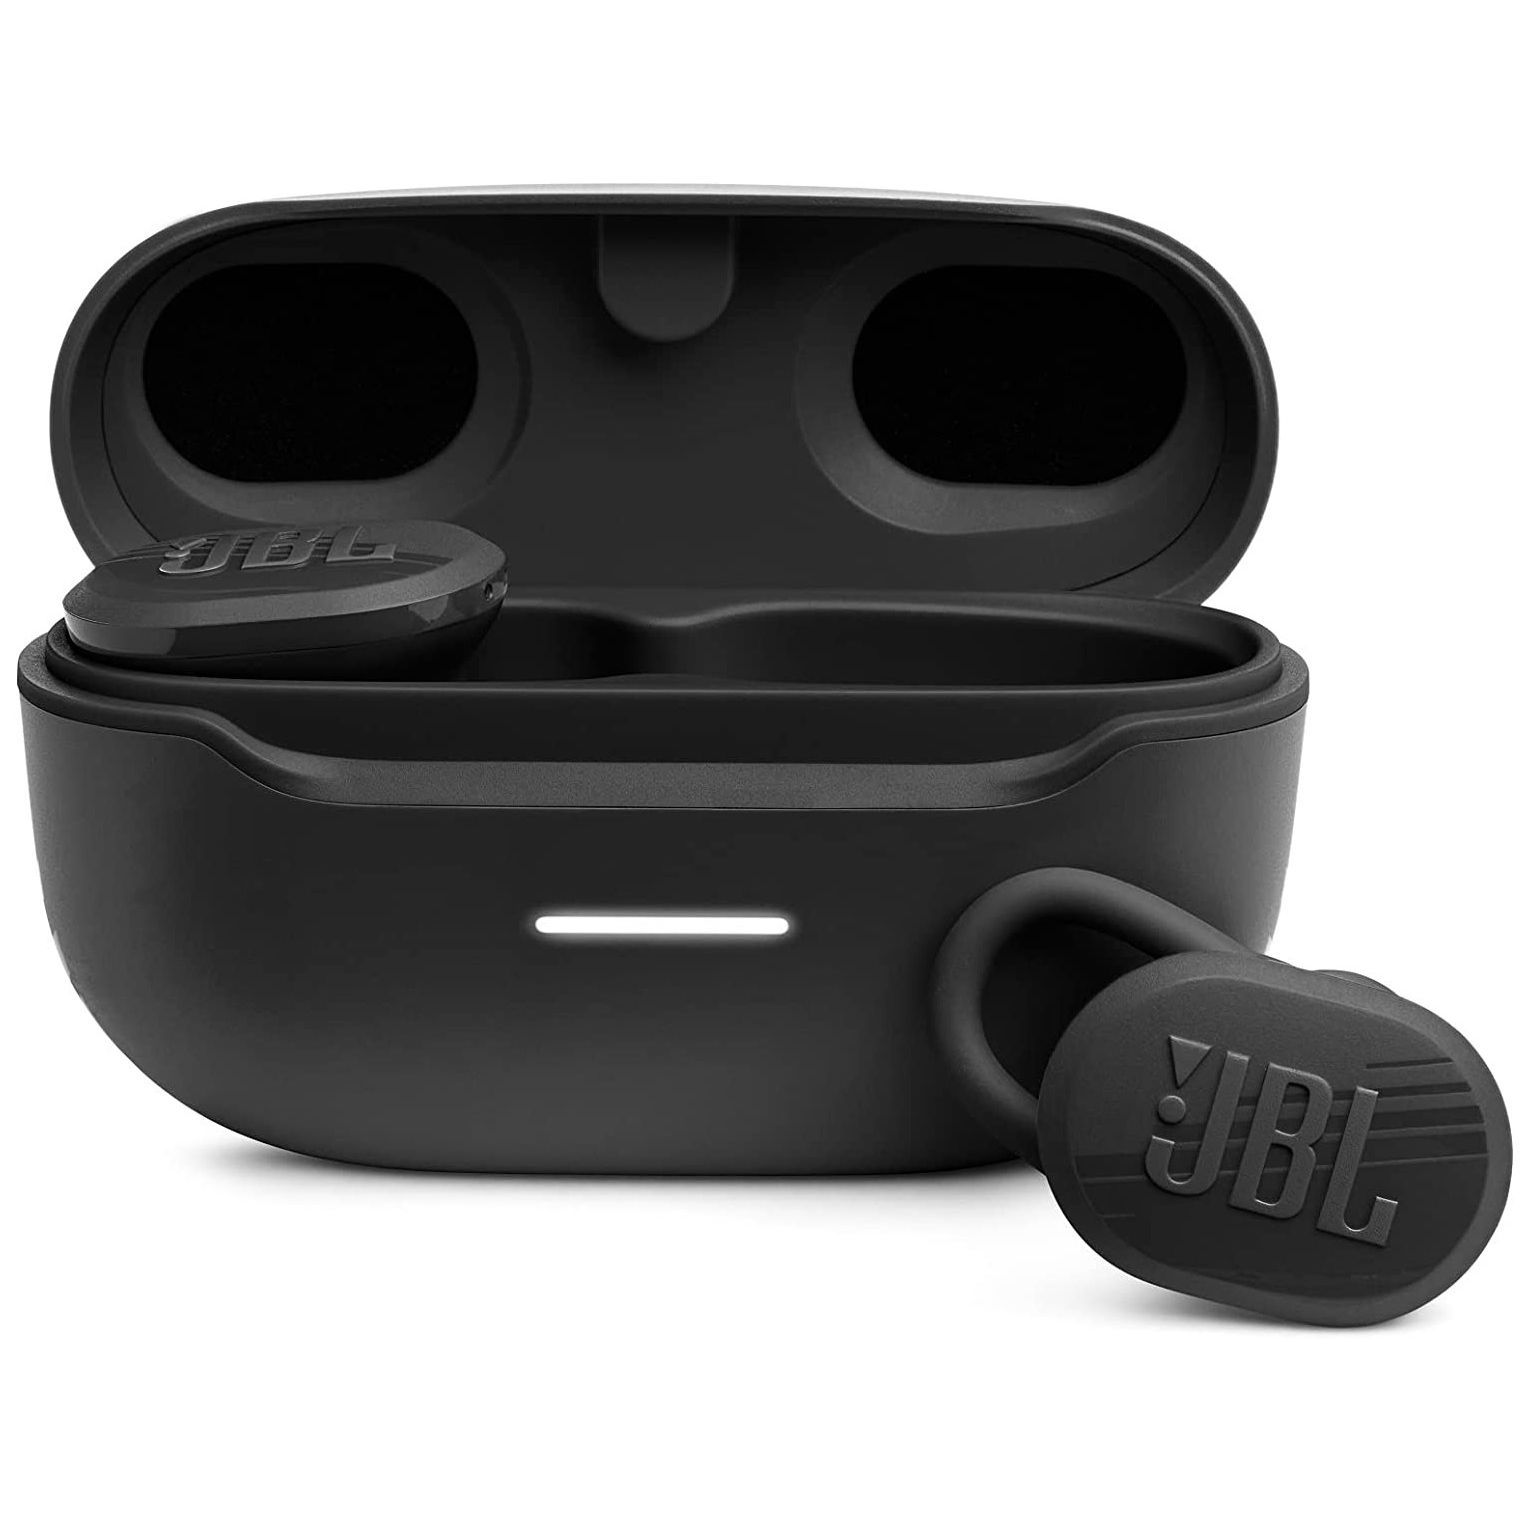 Fones de ouvido Bluetooth verdadeiramente sem fio JBL Endurance Race